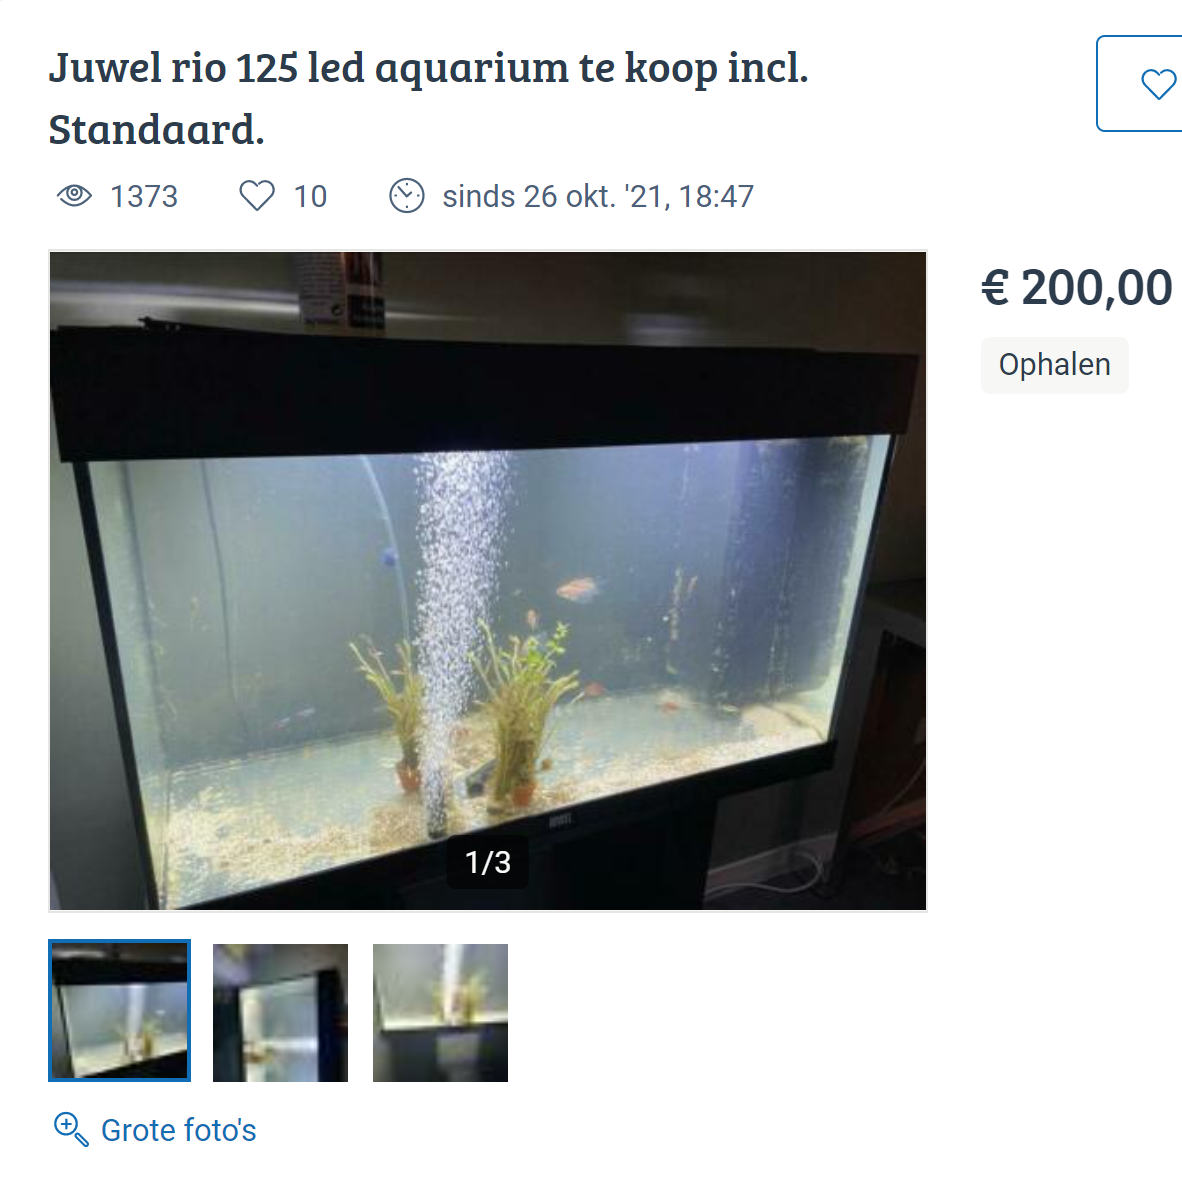 Ashampoo_Snap_vrijdag 31 december 2021_15h59m1s_001_= Juwel rio 125 led aquarium te koop incl....png